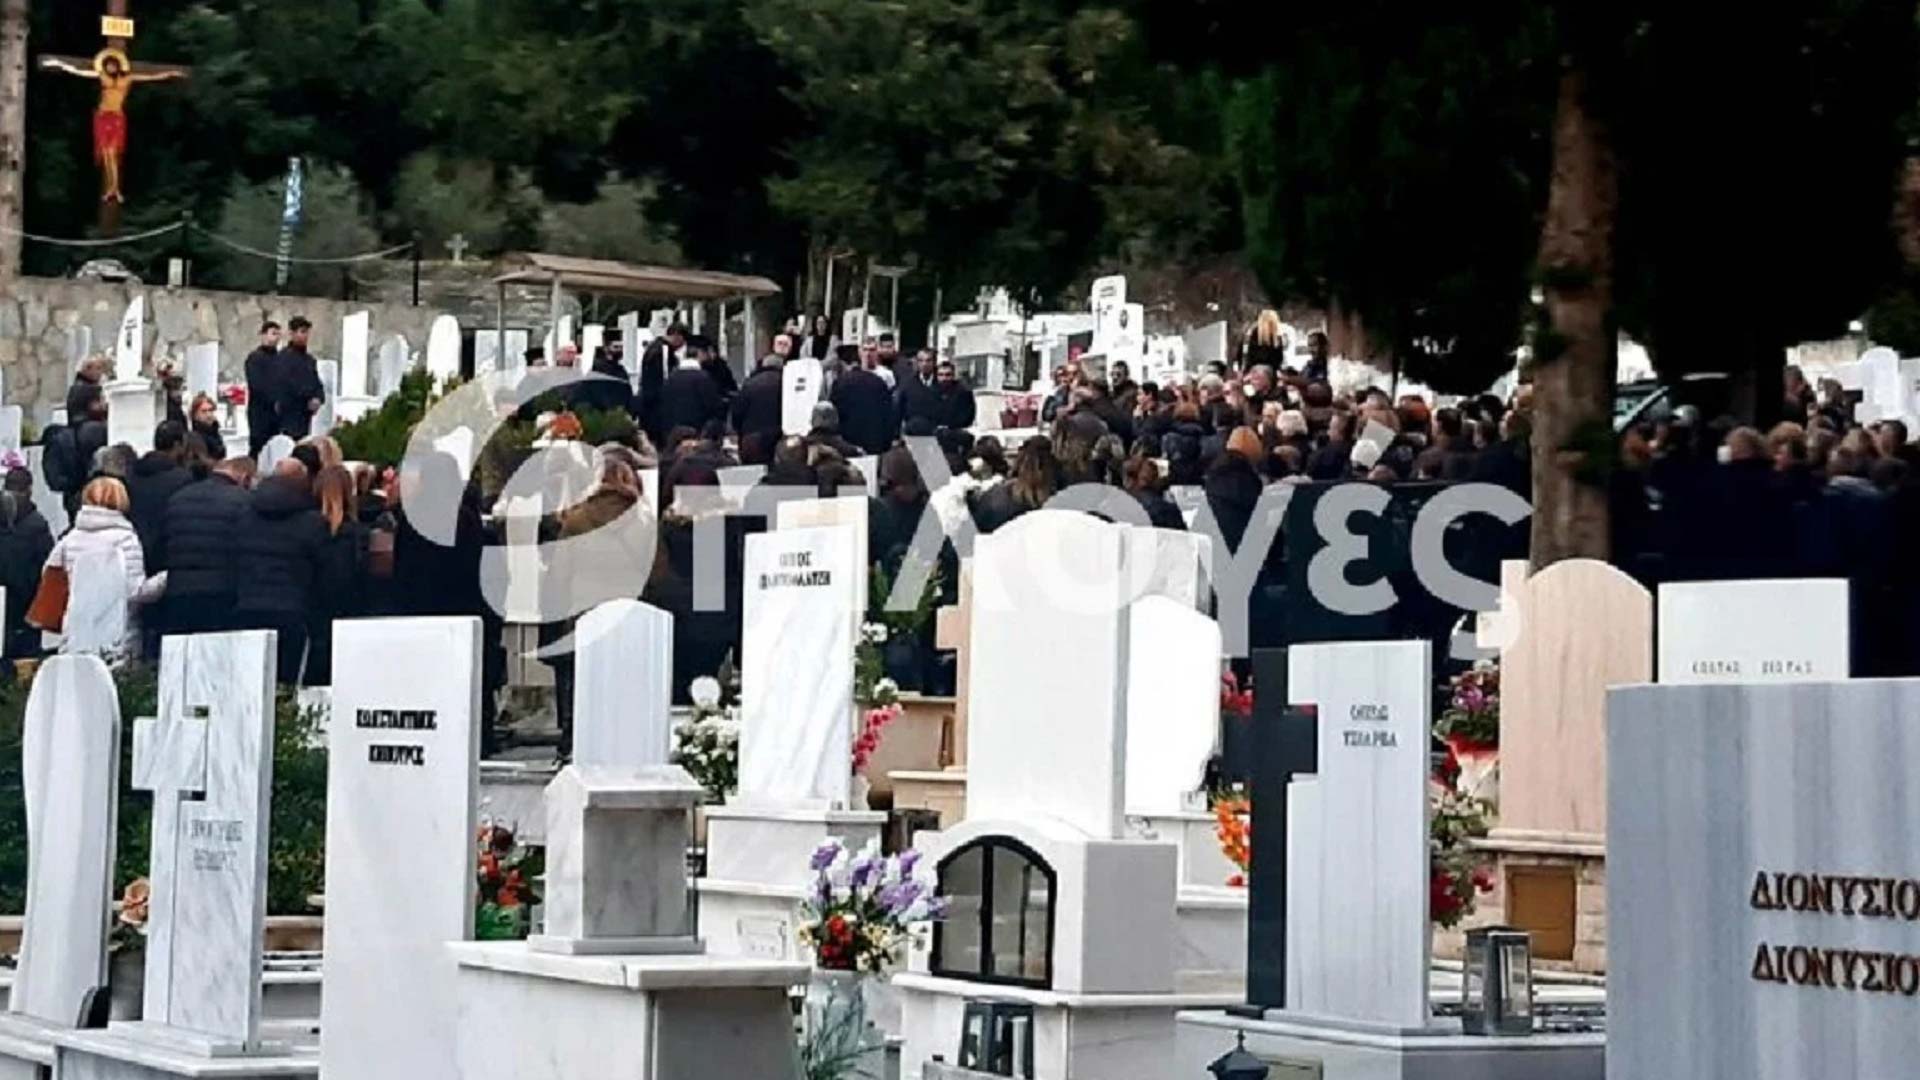 Σέρρες: Ράγισαν καρδιές στην κηδεία του 11χρονου - Σκοτώθηκε από έκρηξη λέβητα στο σχολείο